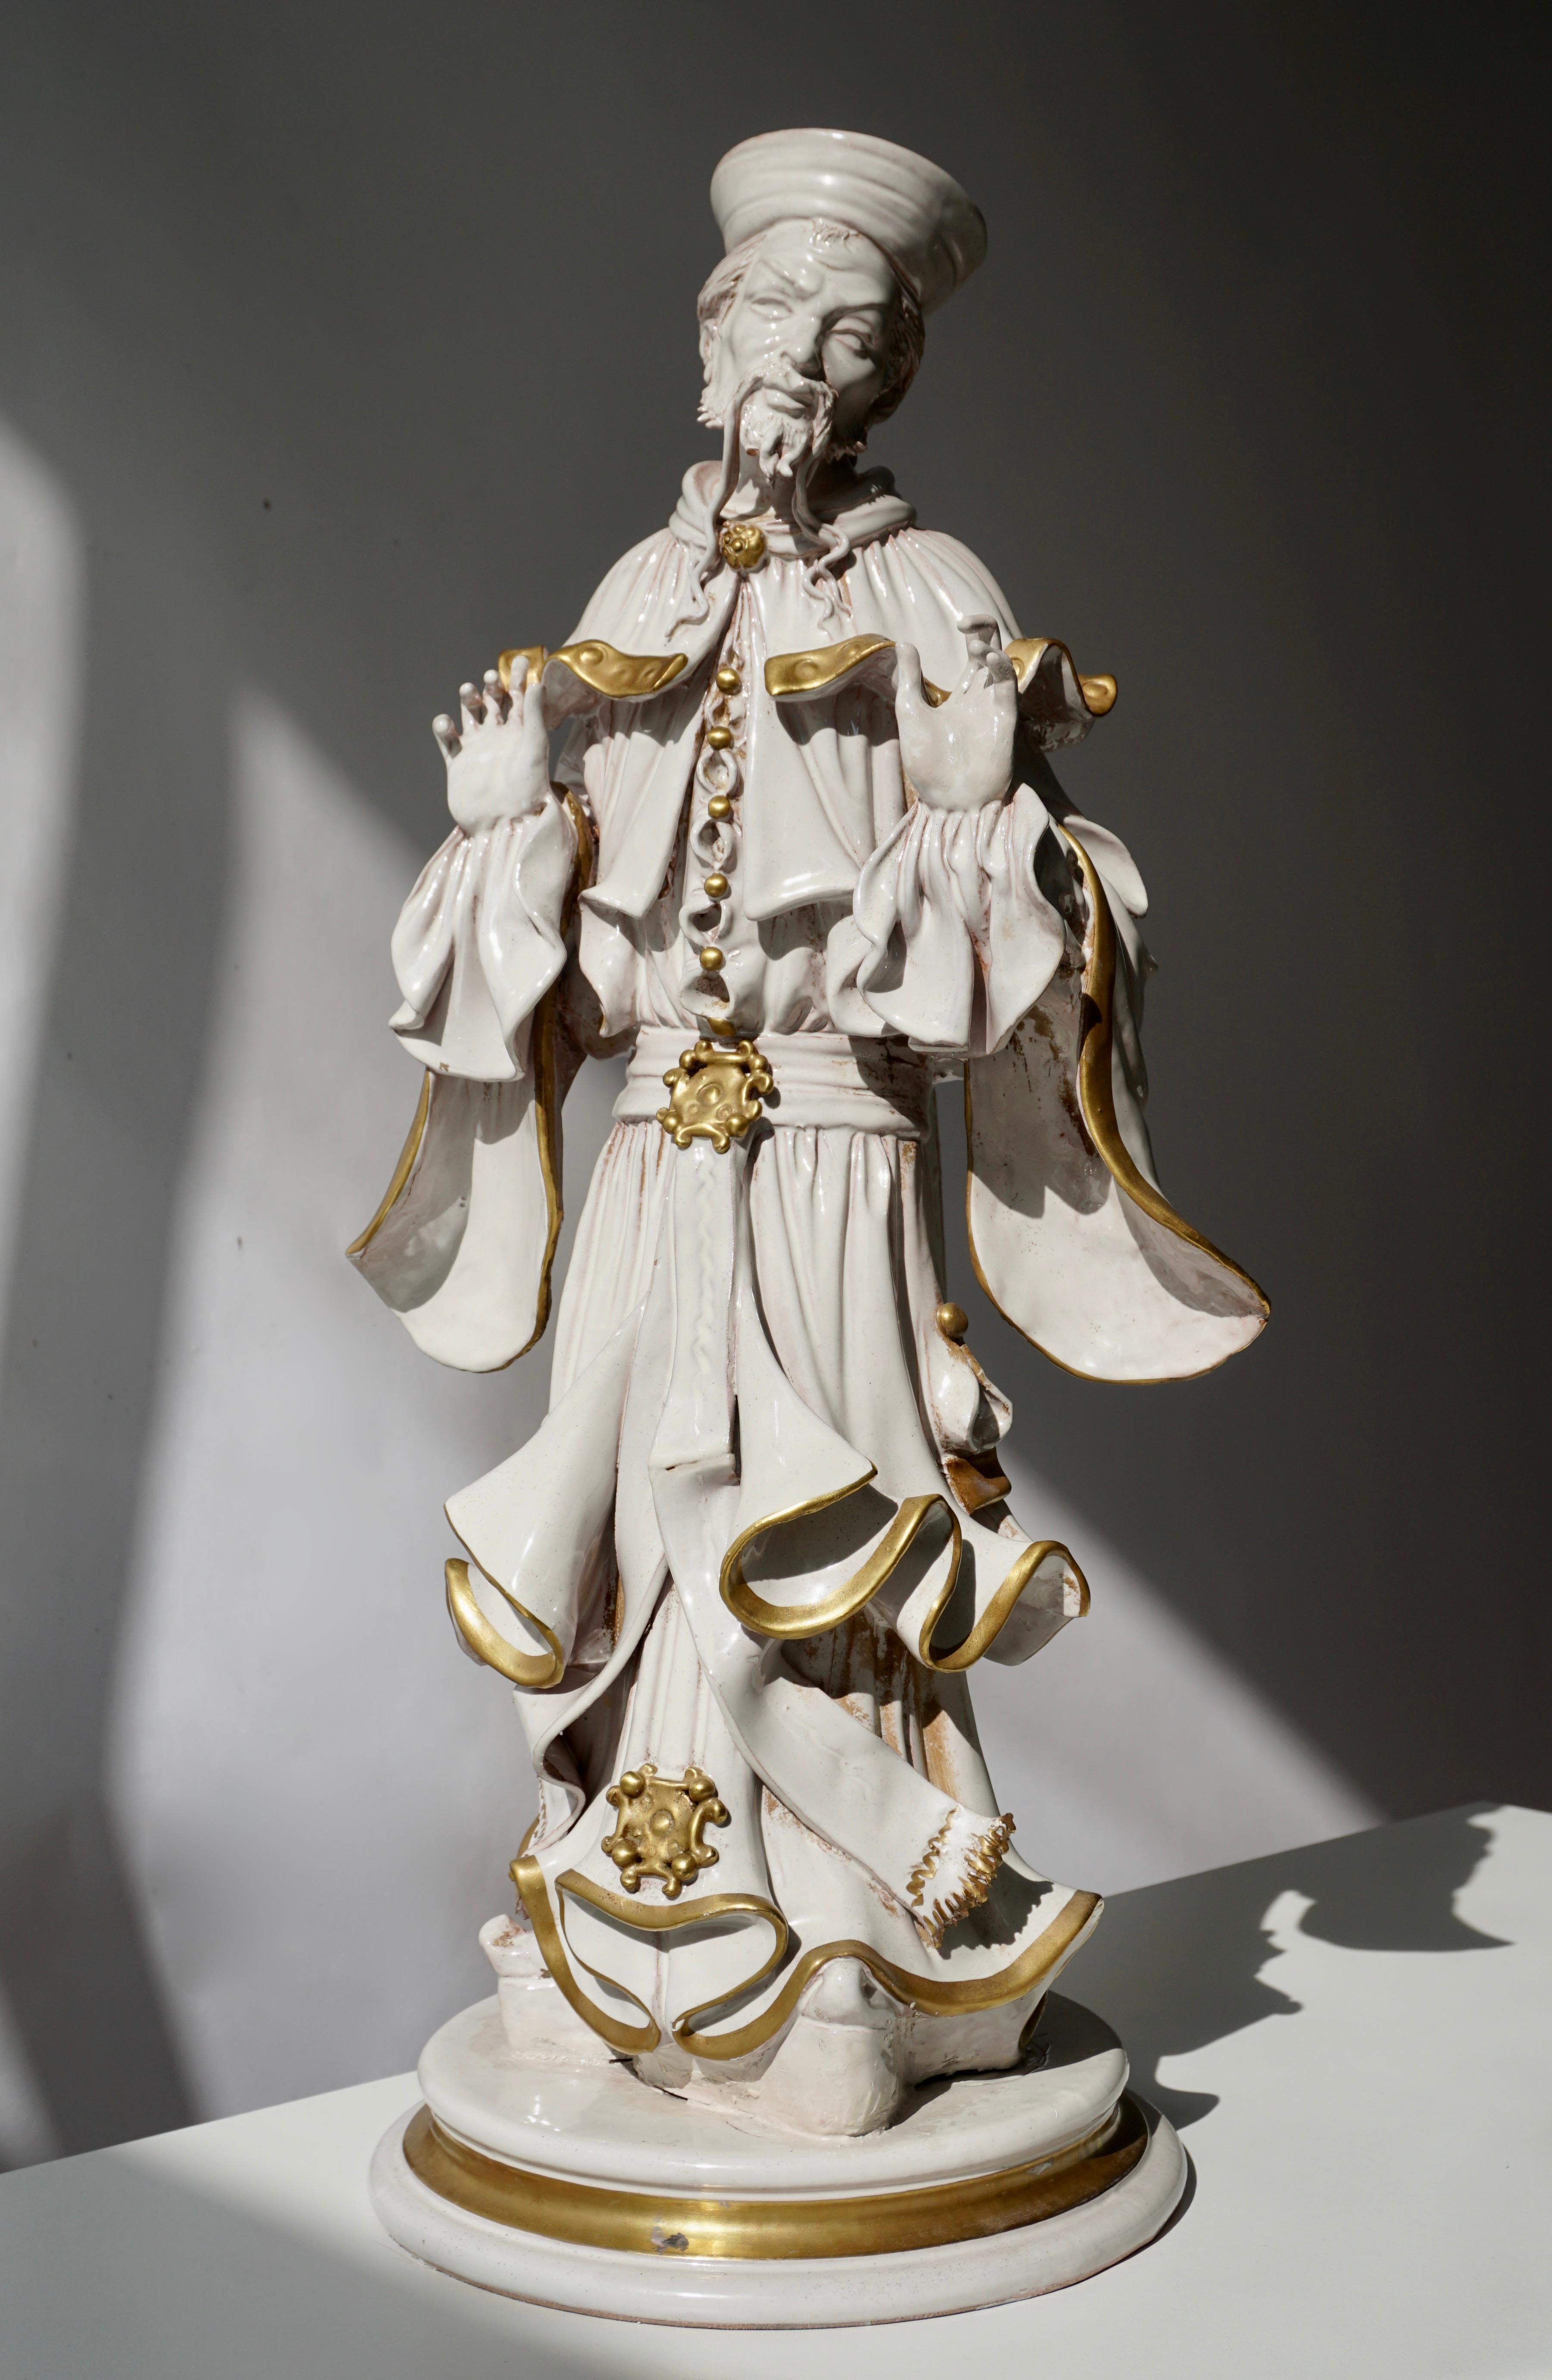 Italienische Porzellanskulptur.
Maße: Höhe 56 cm.
Breite 26 cm.
Tiefe 22 cm.